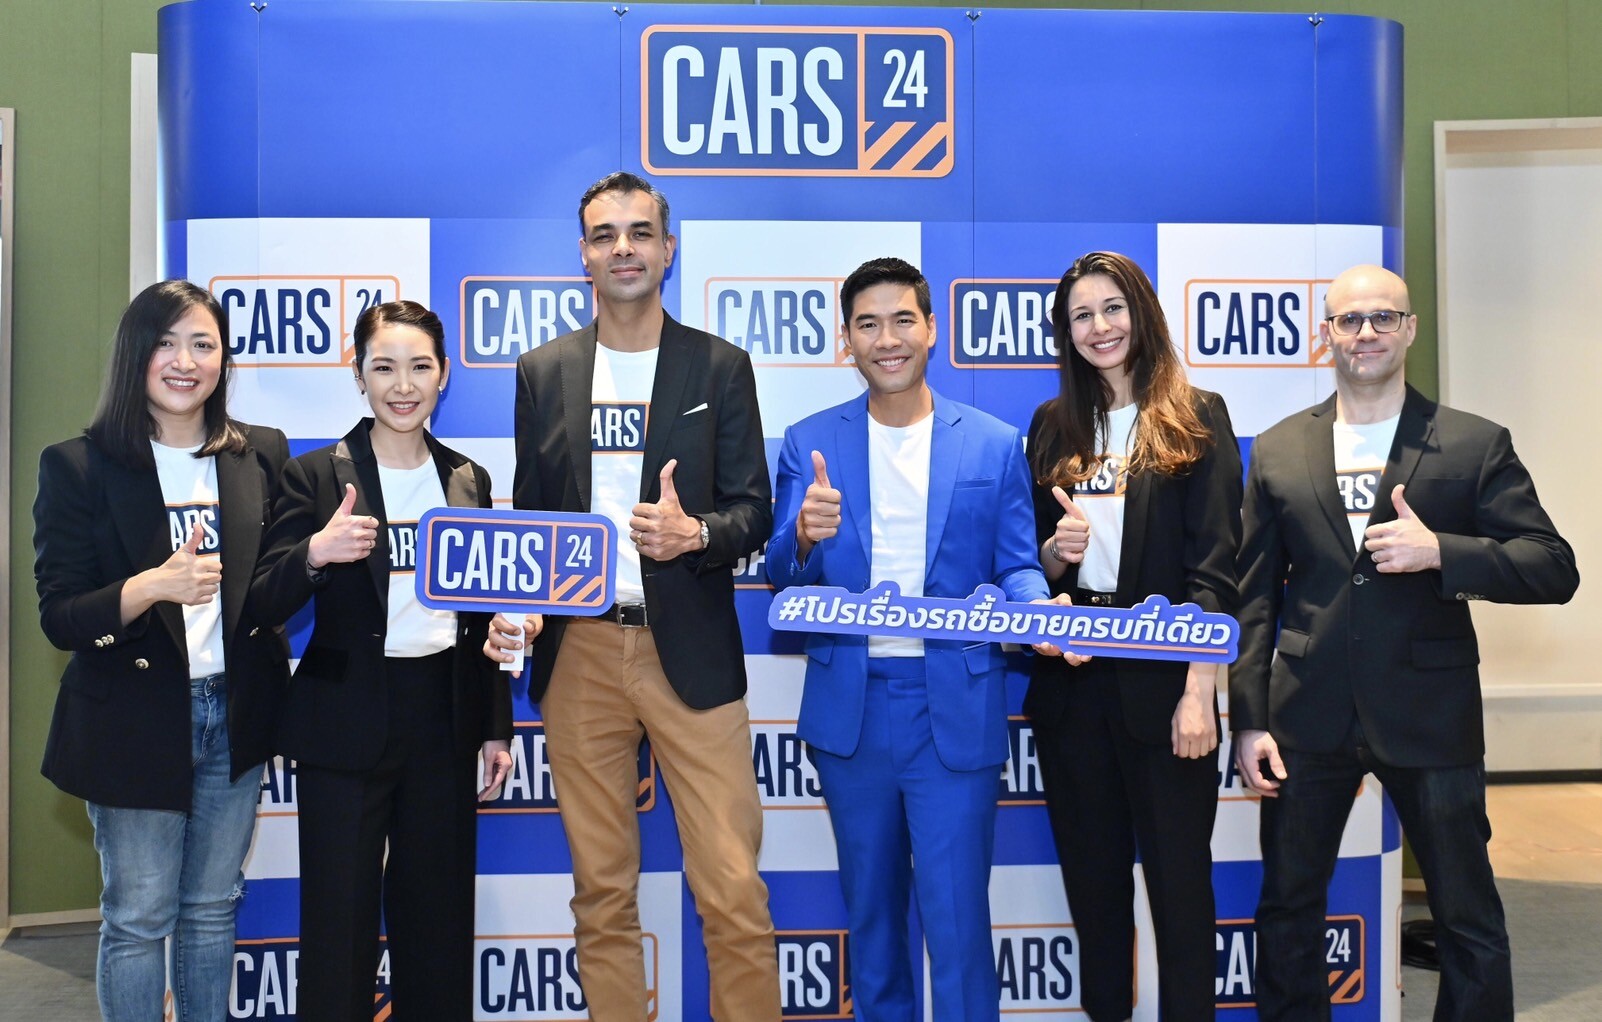 CARS24 เผยภาพรวมธุรกิจในไทย ตั้งเป้าเป็นแพลตฟอร์มครบวงจร มอบประสบการณ์ที่ดีที่สุดให้ผู้ใช้ พร้อมเปิดตัว วู้ดดี้ นั่งแท่นพรีเซ็นเตอร์คนแรก